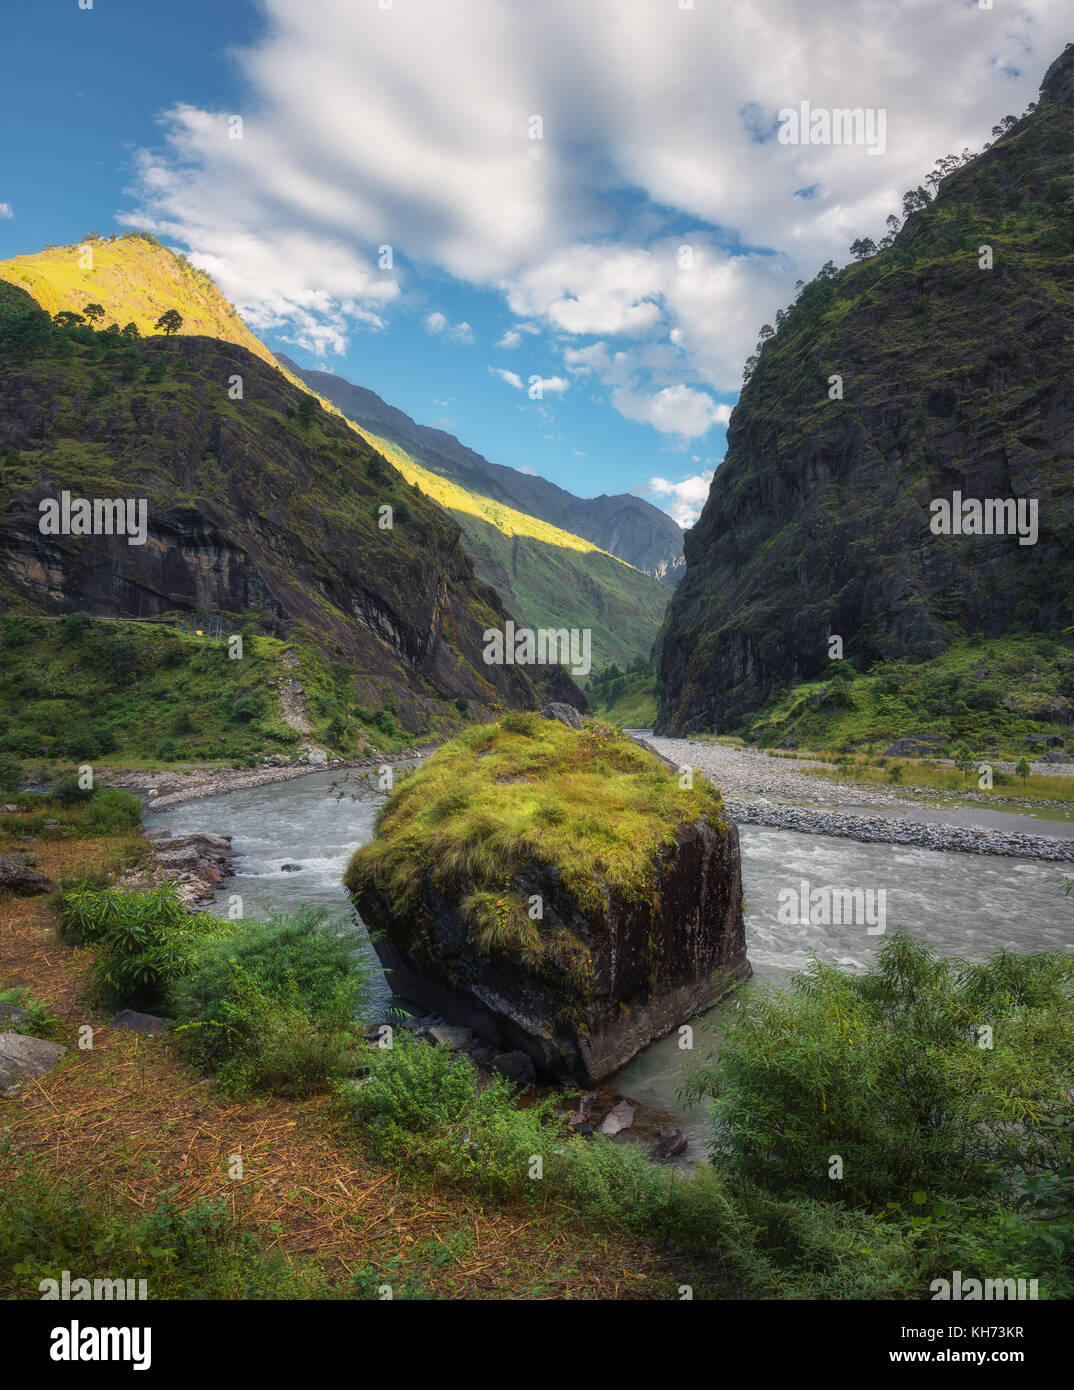 Vista stupefacente con alta montagna himalayana, splendido fiume, bosco verde, cielo blu con nuvole e big stone in acqua in autunno in Nepal a sunrise. Foto Stock